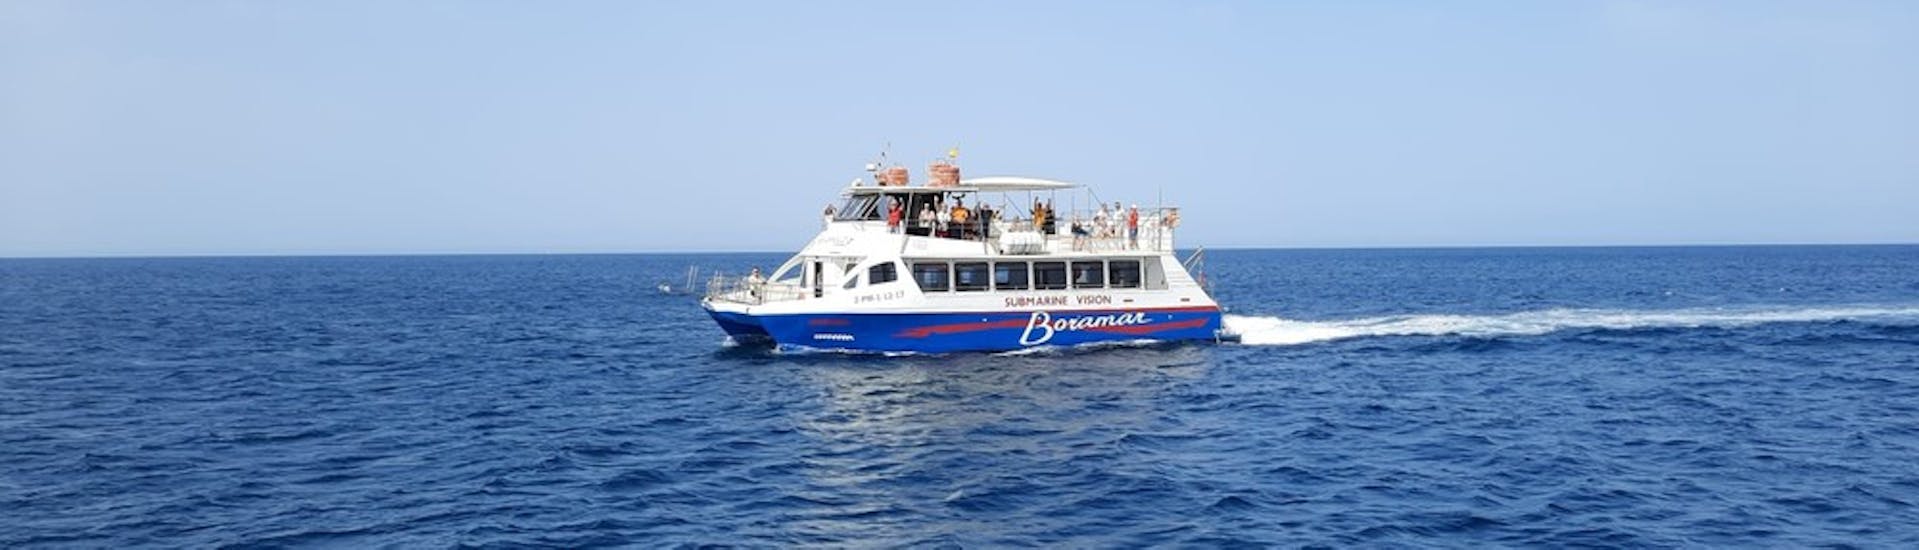 Traslado en barco entre Denia y Jávea con Boramar Denia.